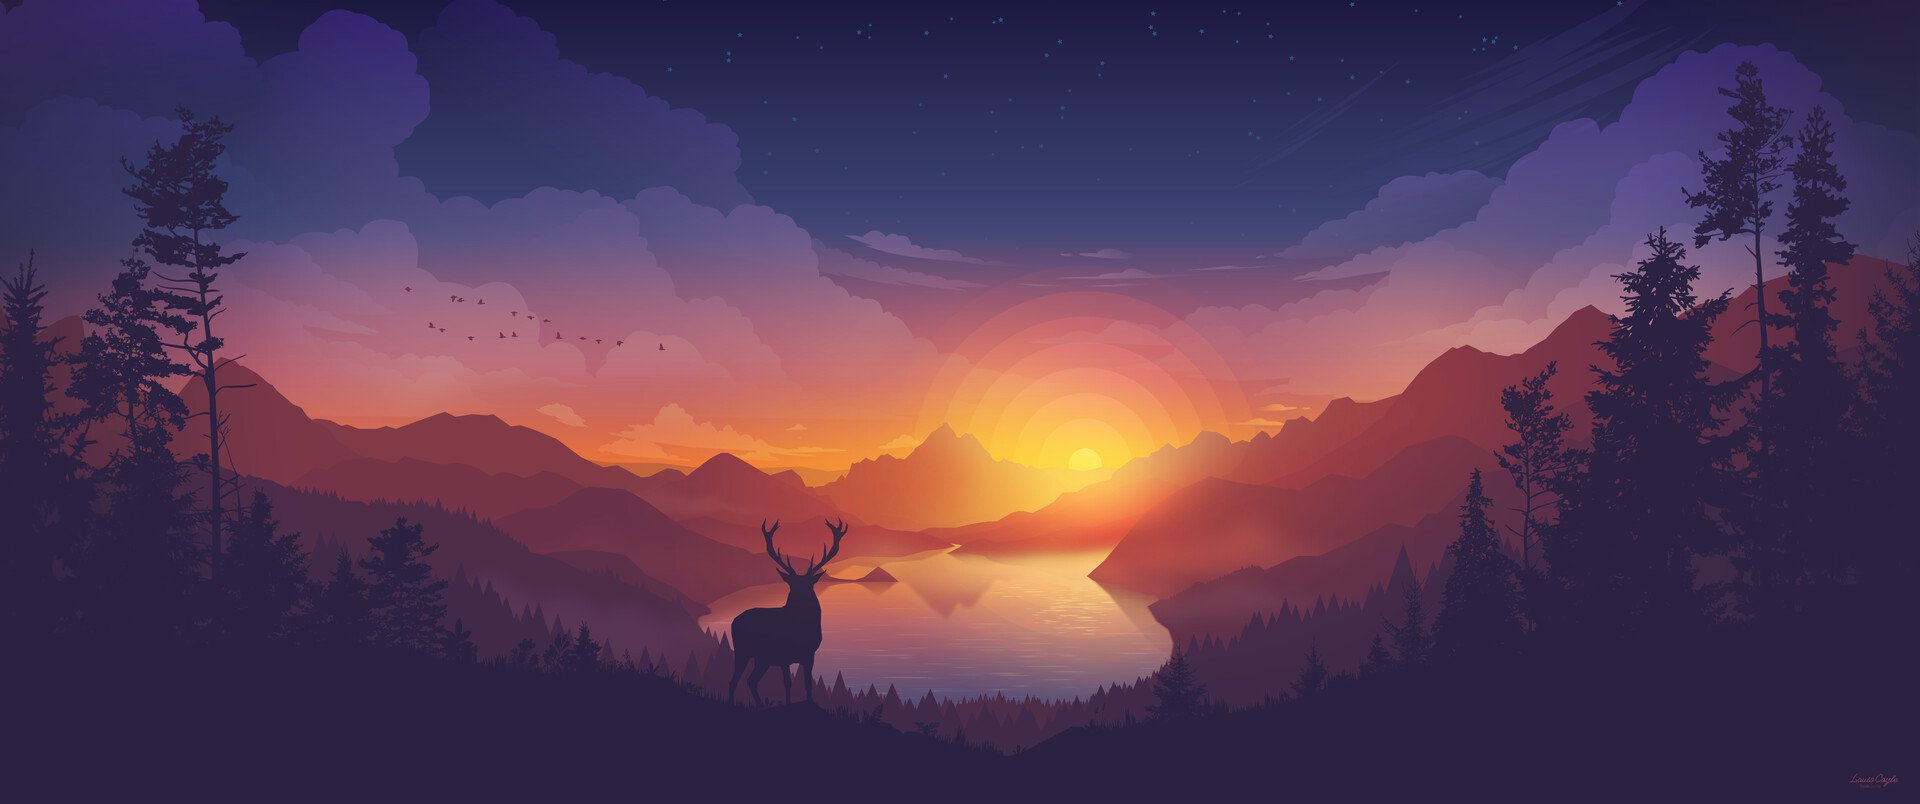 General 1920x804 landscape valley lake forest sunset elk deer